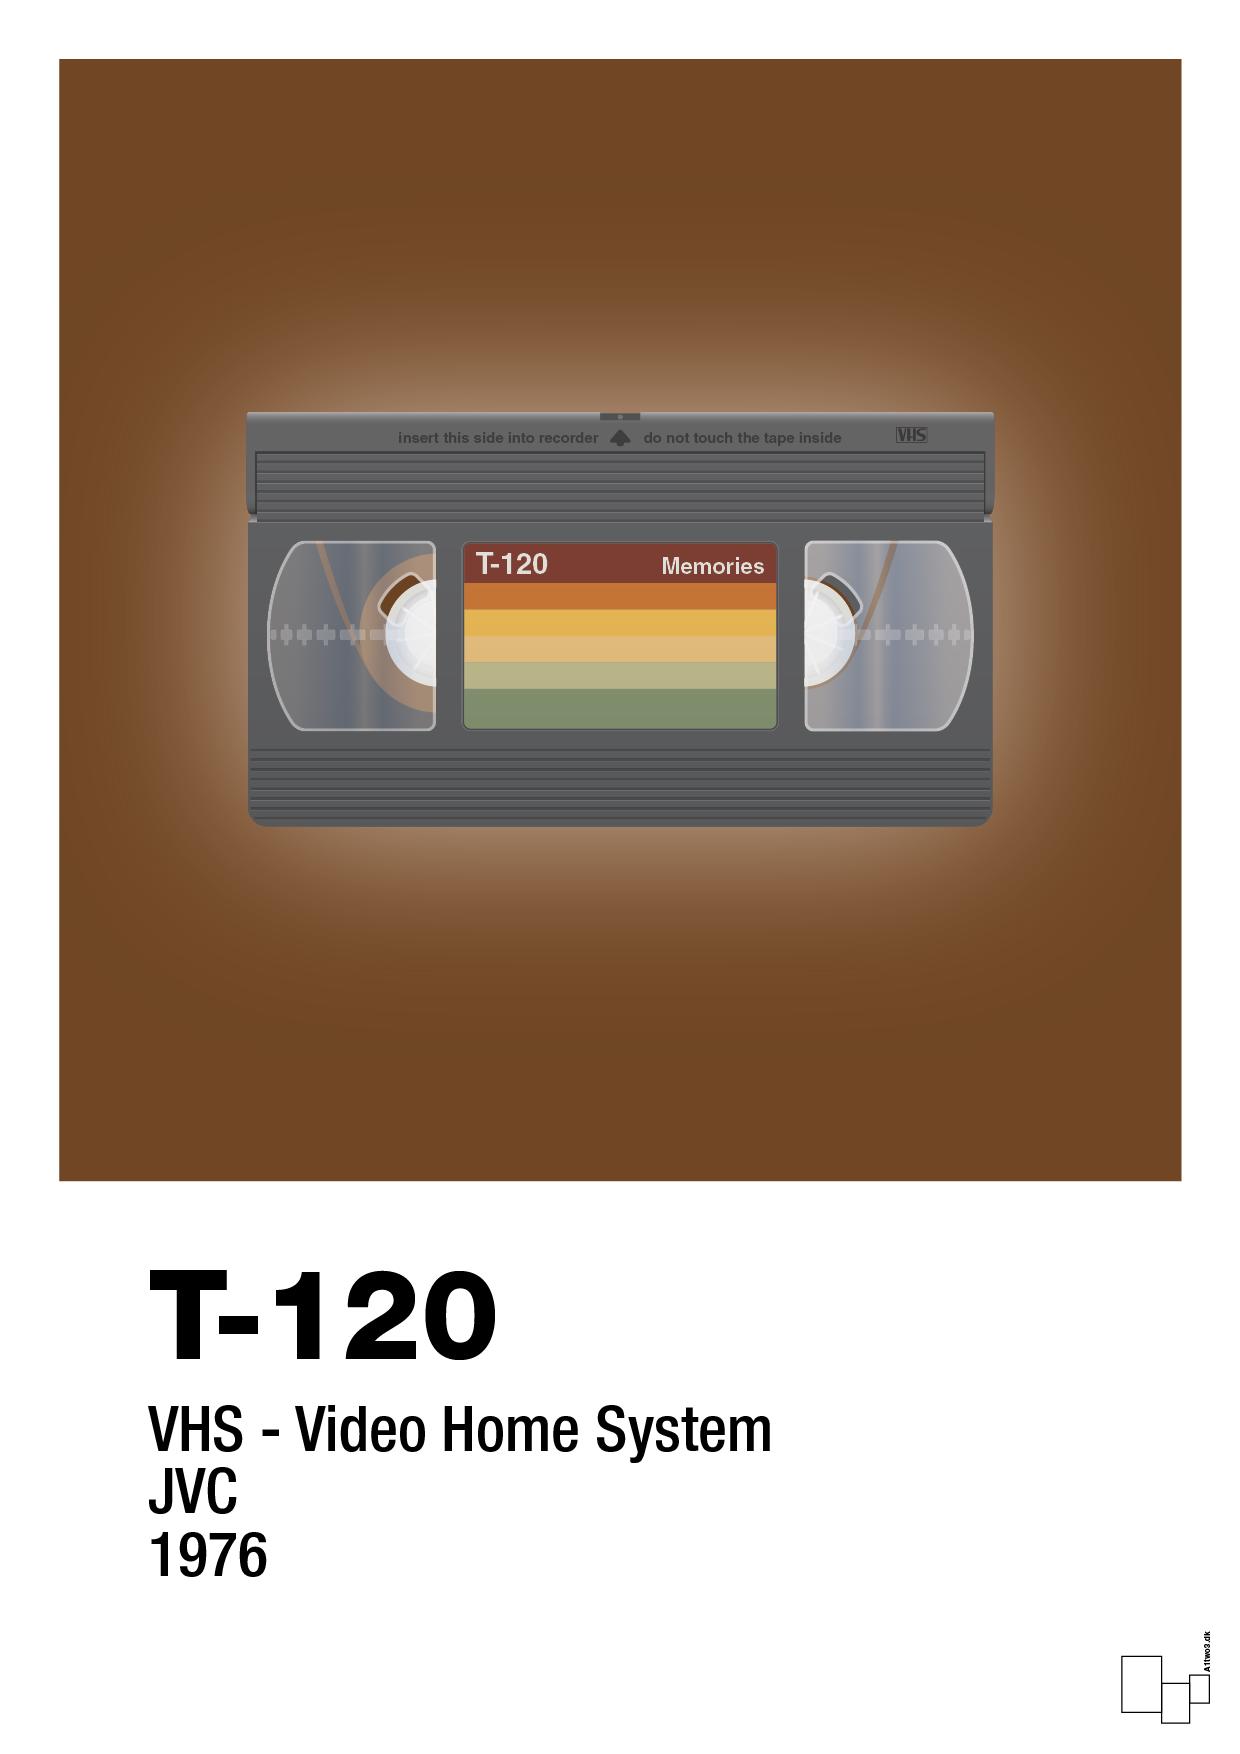 videobånd t-120 - Plakat med Grafik i Dark Brown